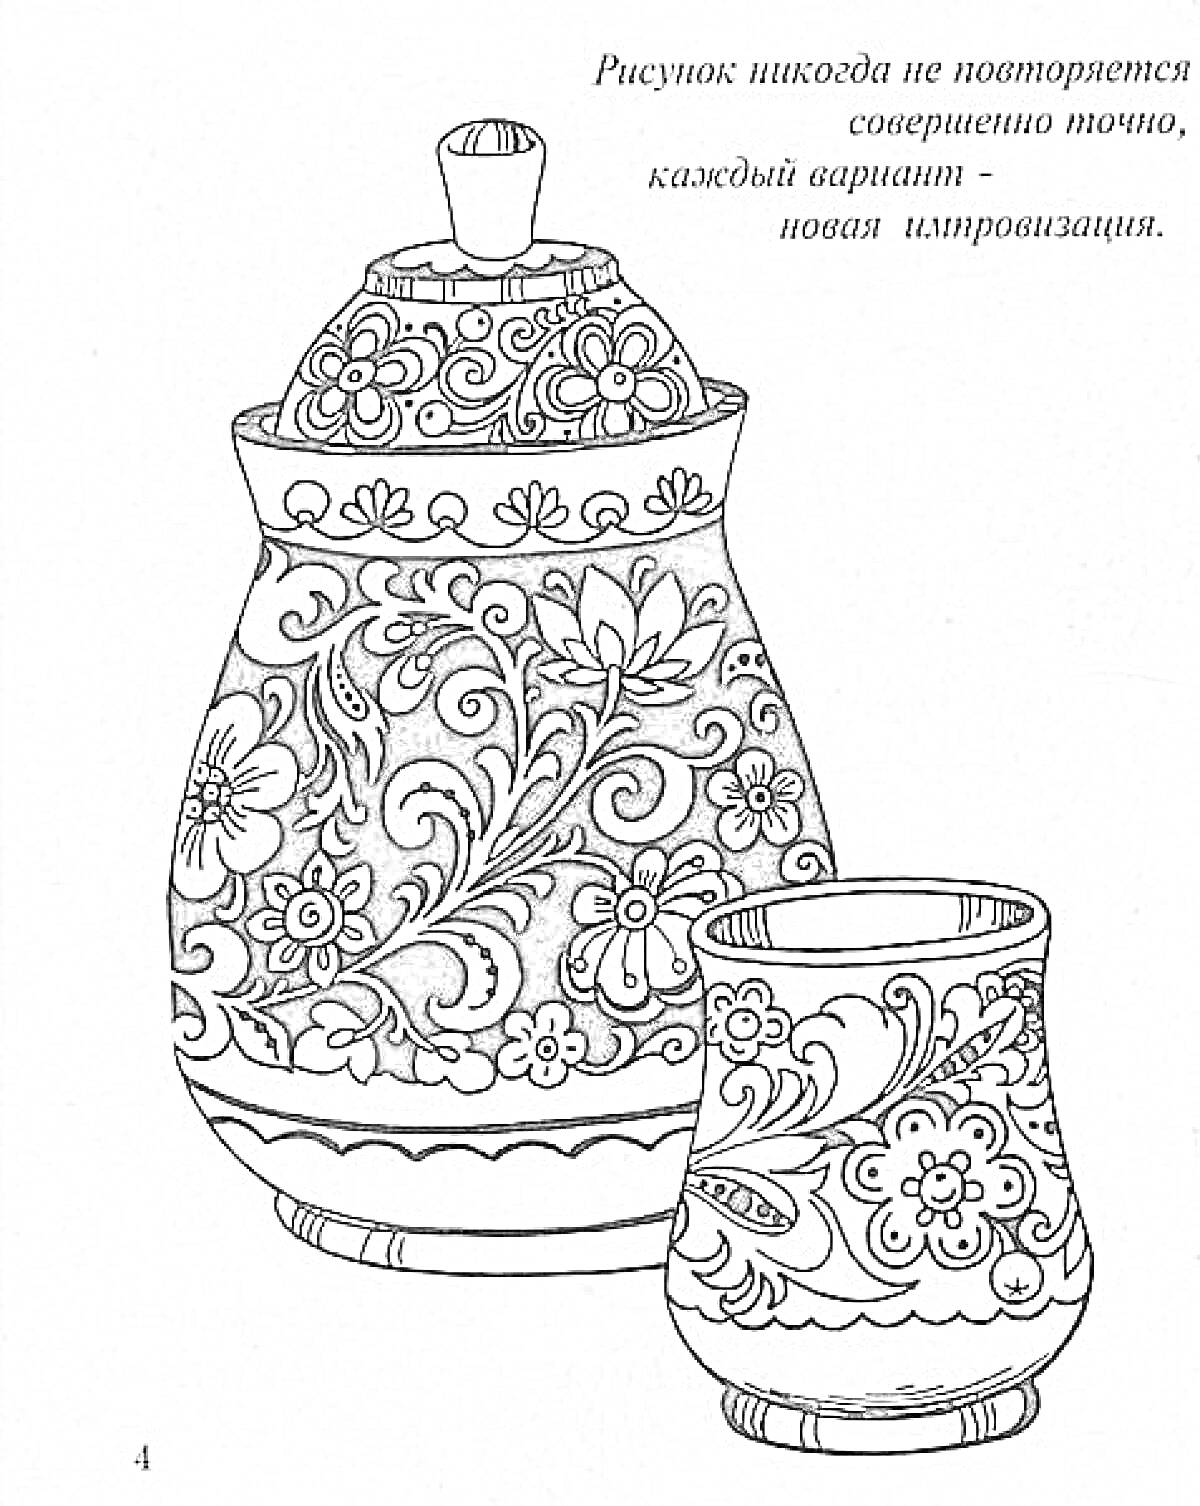 Хохлома - баночка с крышкой и стаканчик с цветочным орнаментом